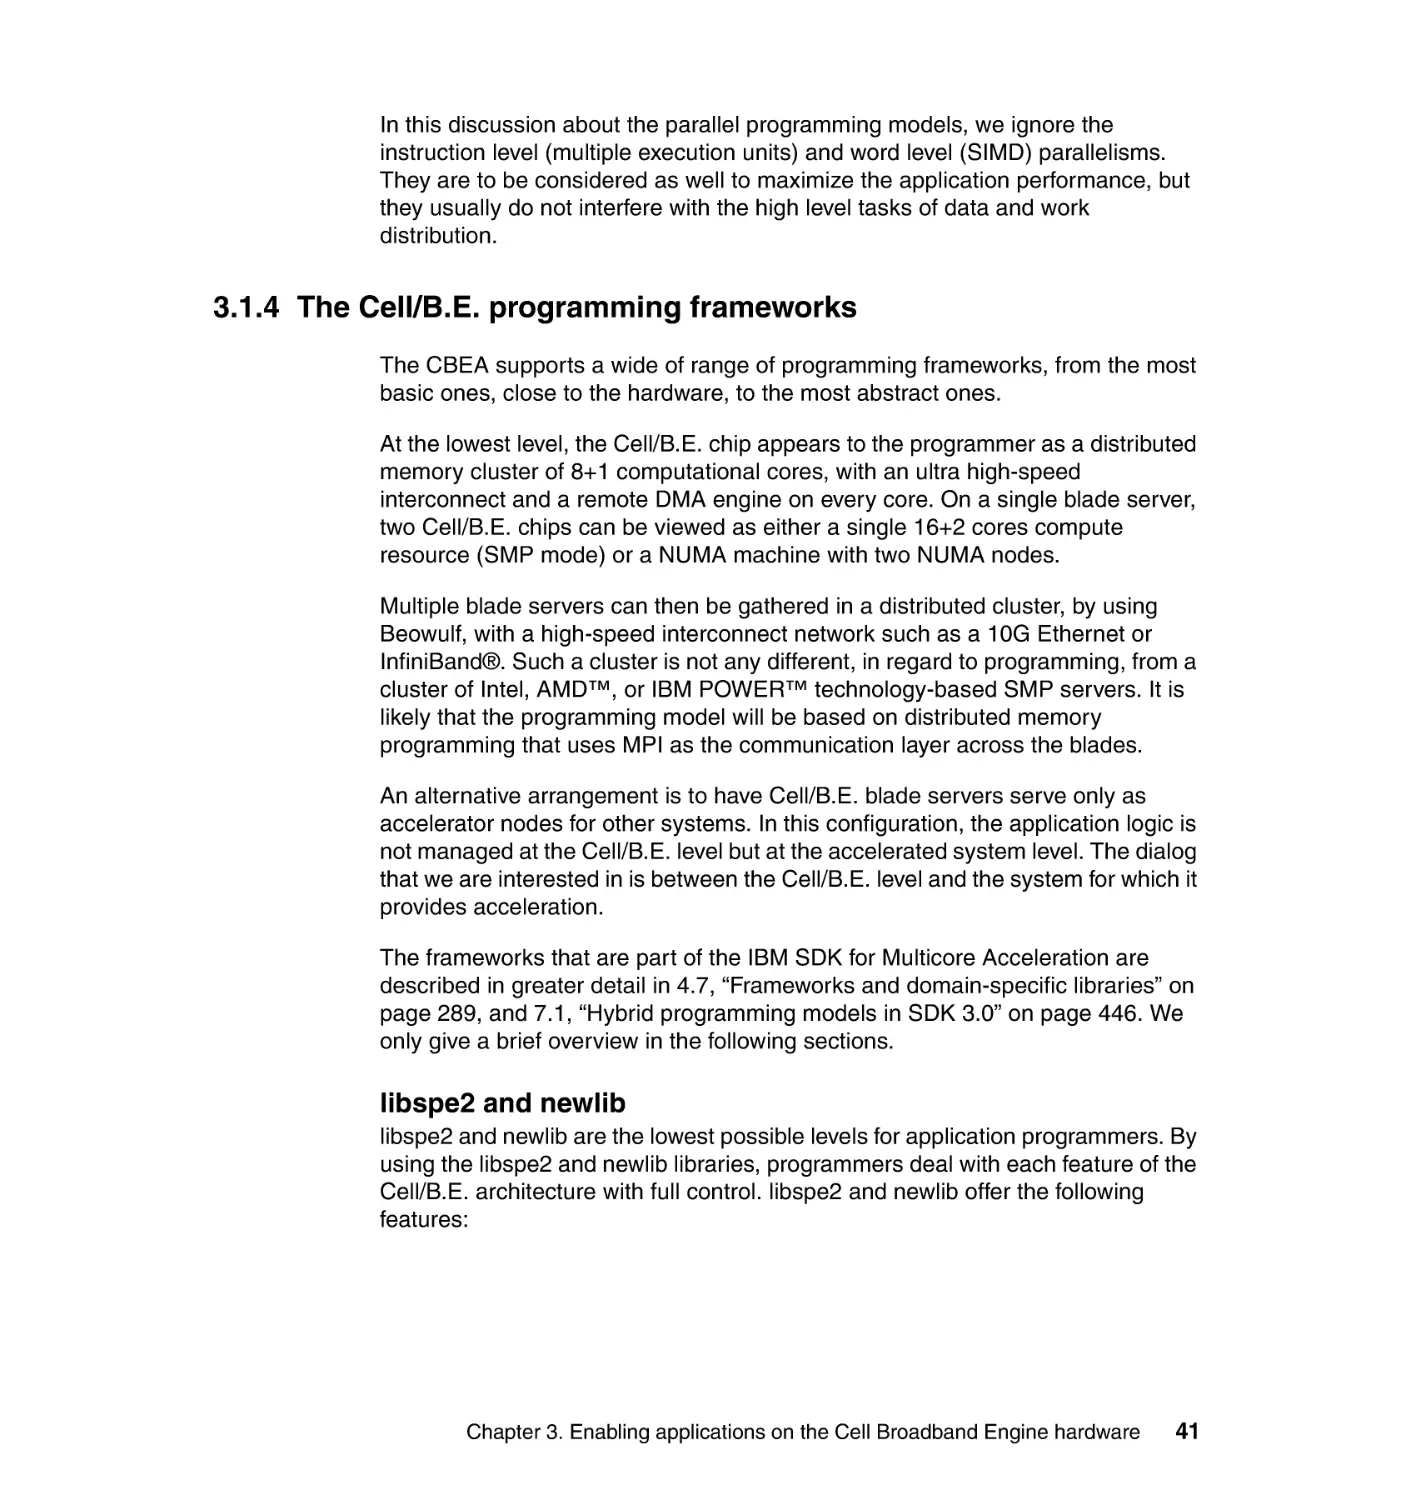 3.1.4 The Cell/B.E. programming frameworks